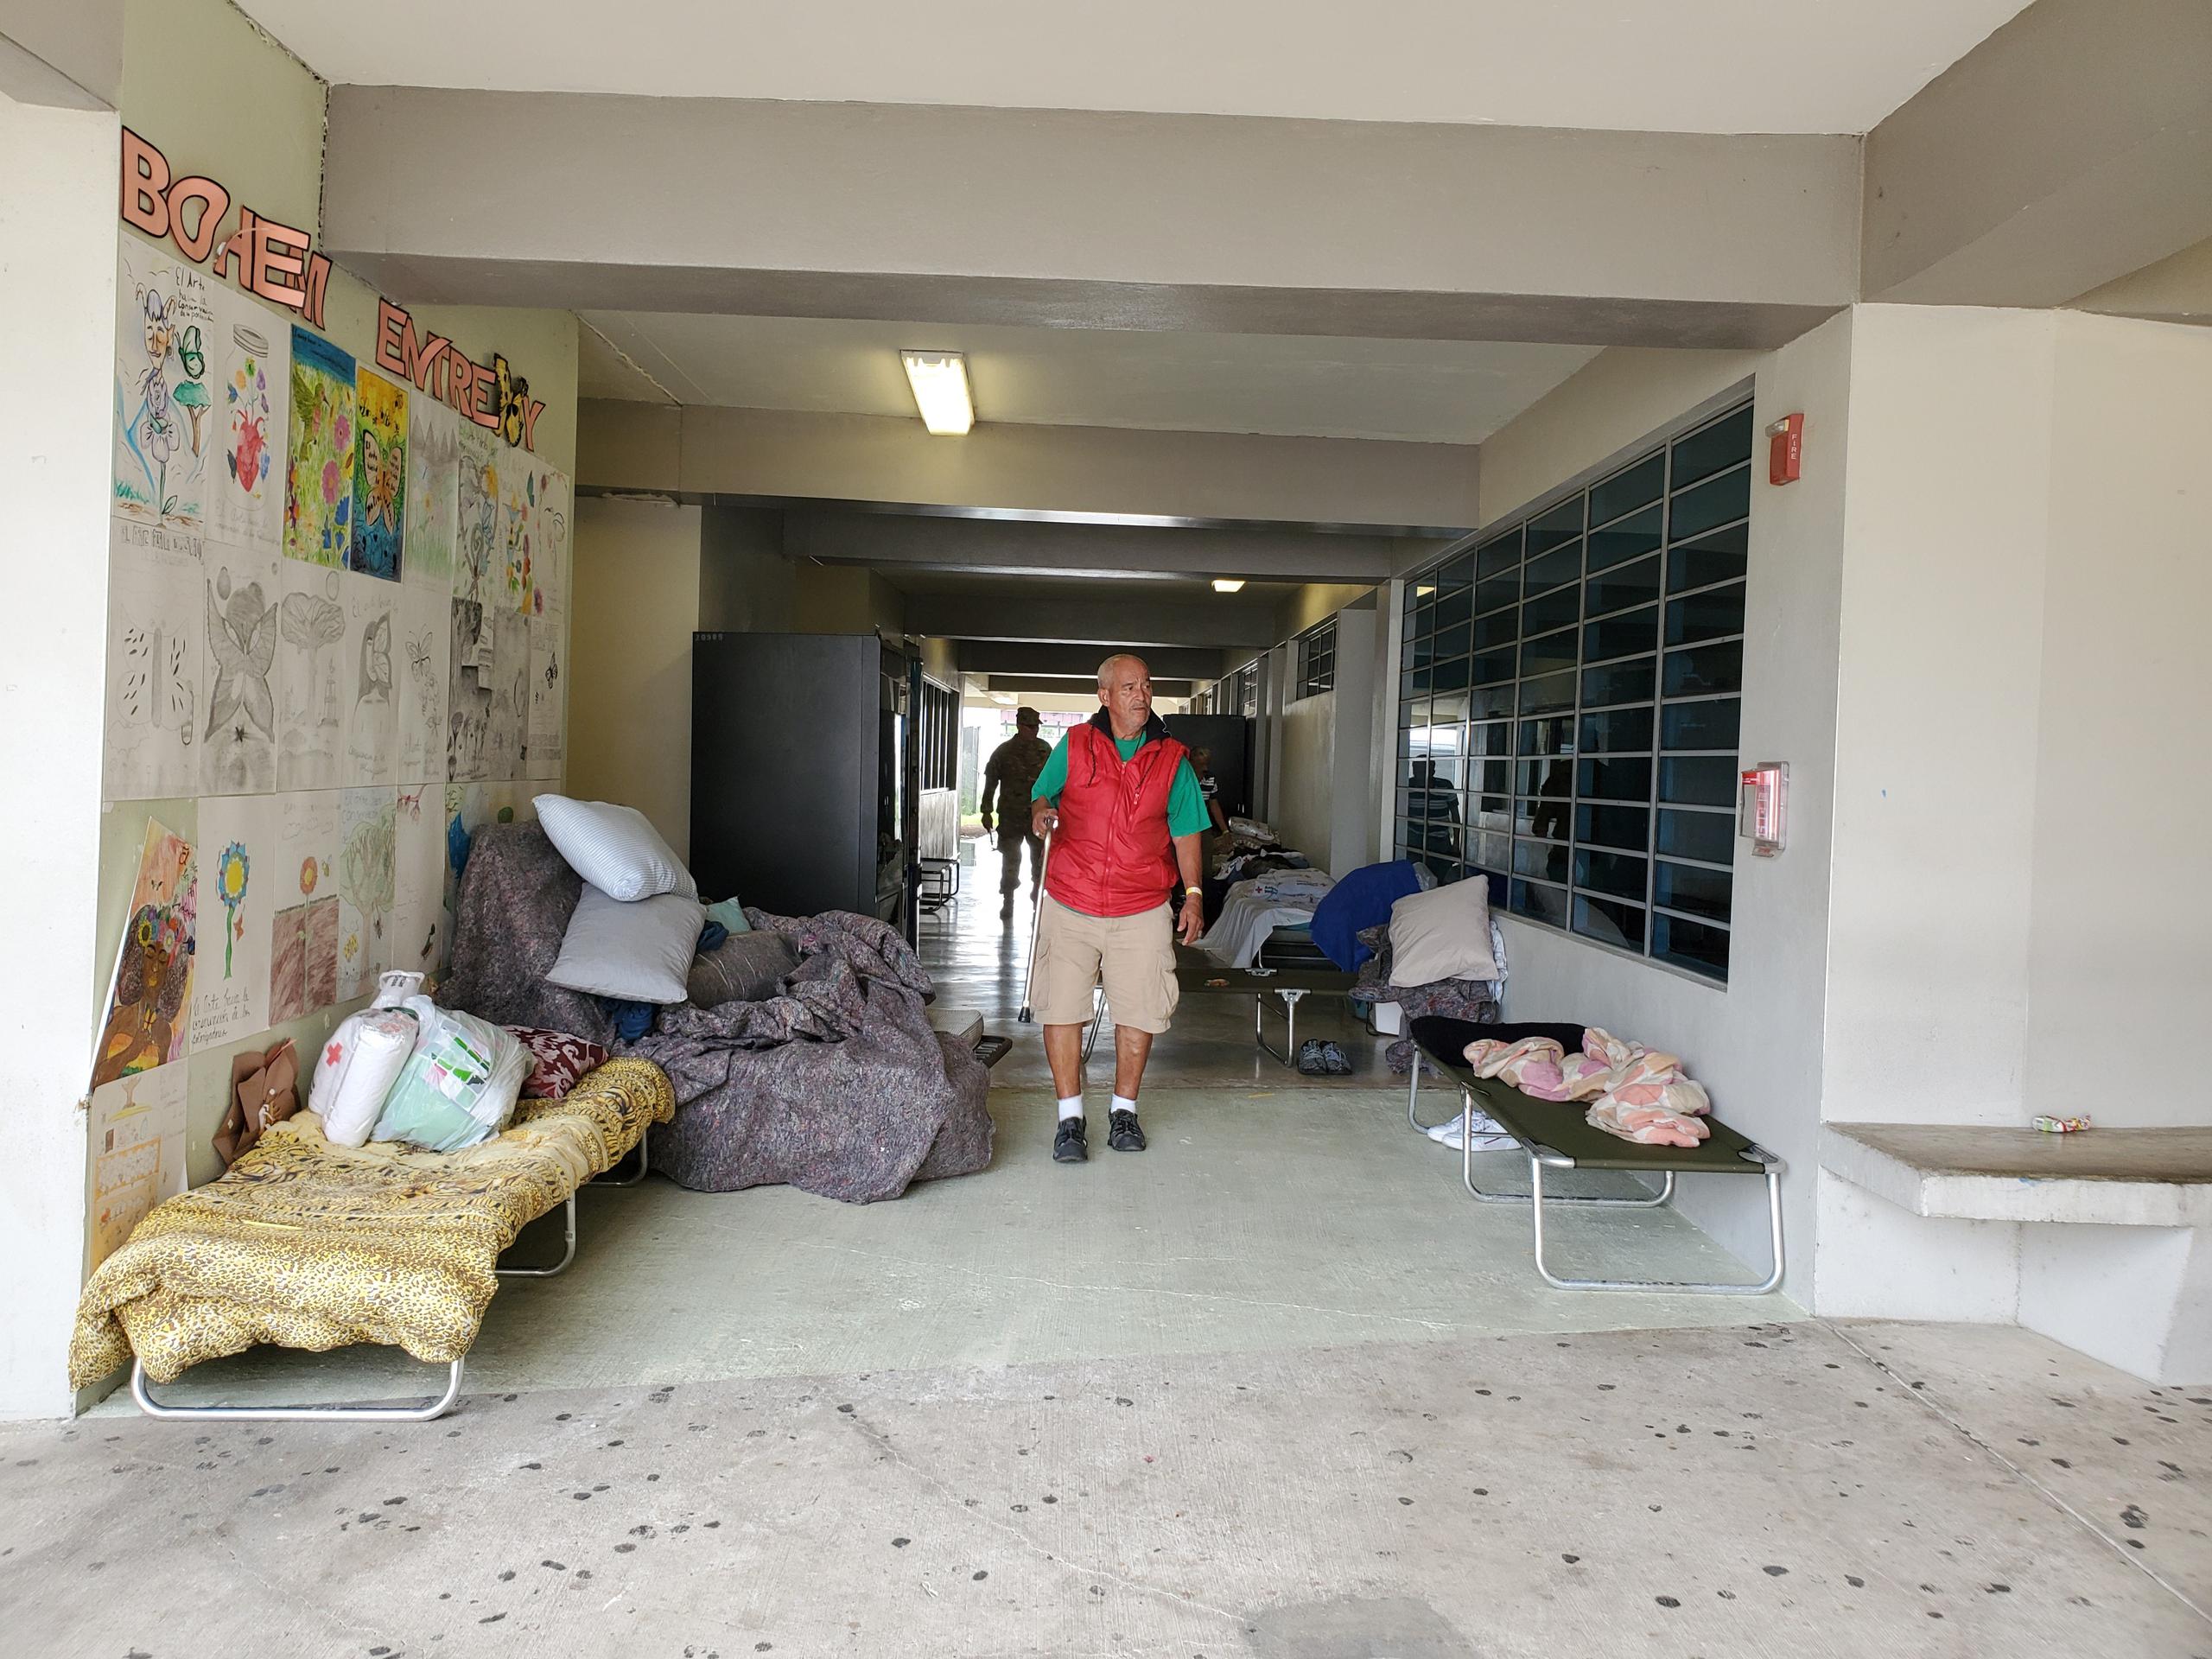 Refugiados han colocados sus catres en los pasillos de la escuela vocacional Bernardino Cordero Bernard.